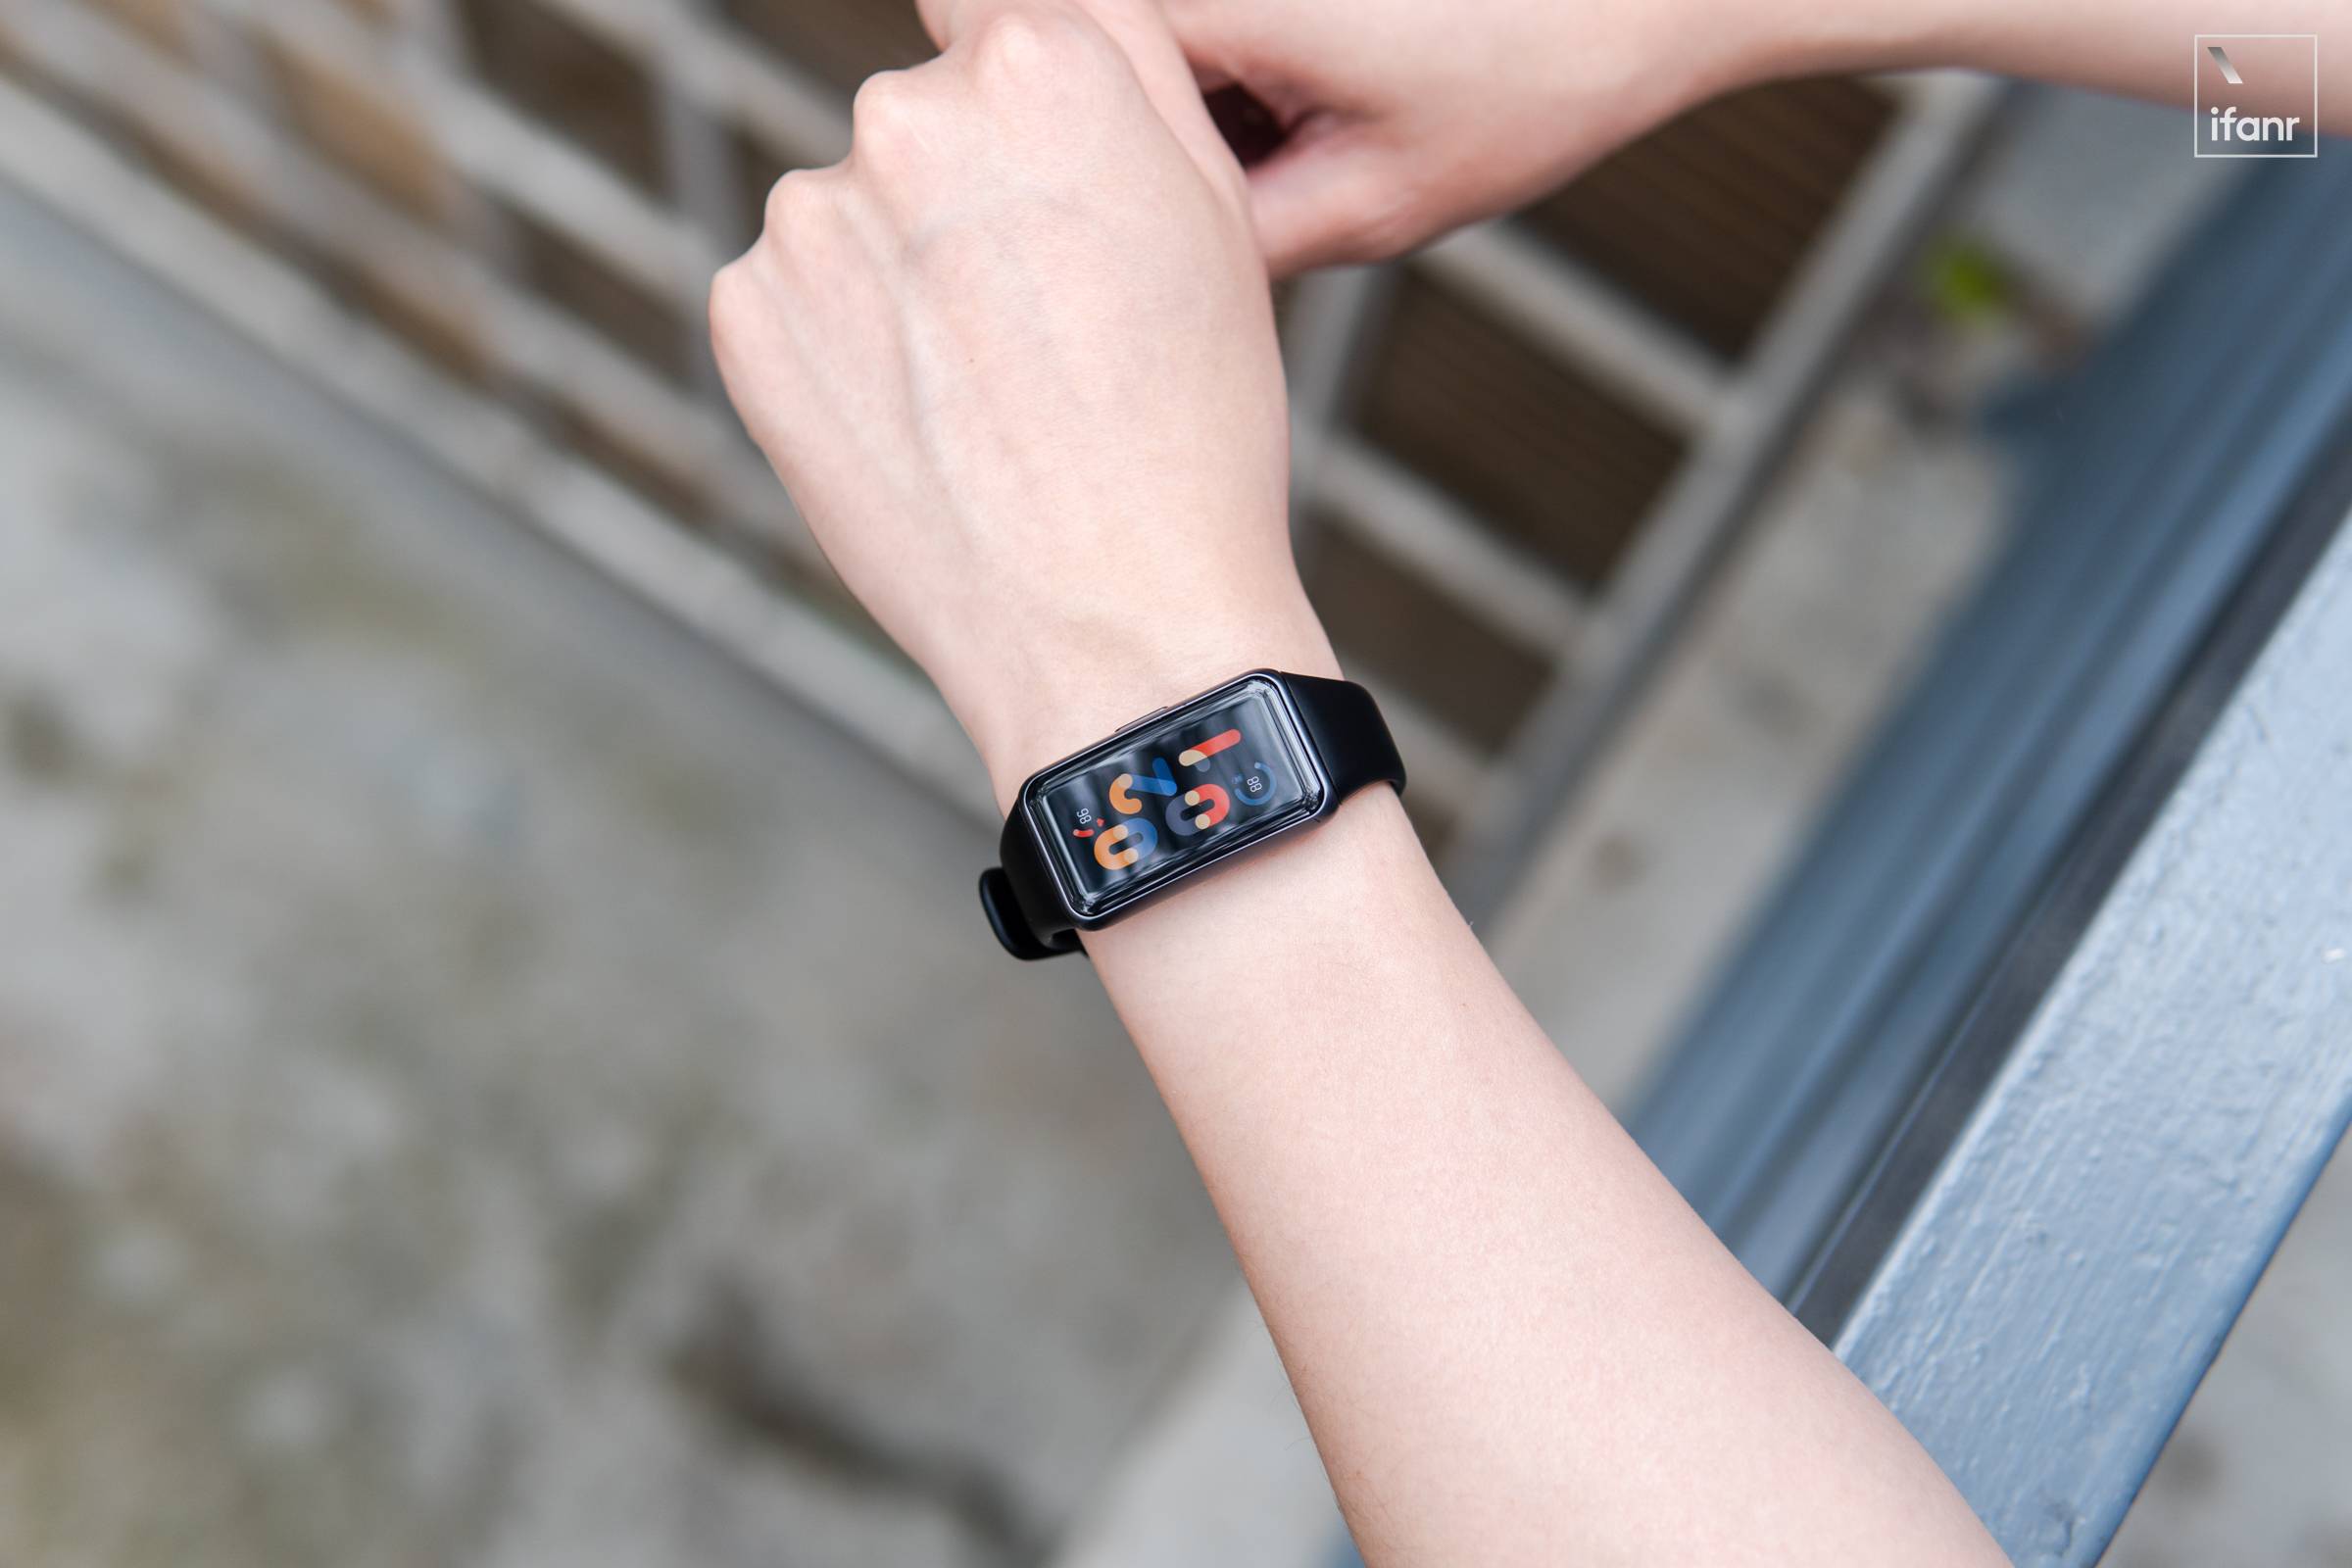 DSC09276 - Esperienza con il braccialetto Huawei 6: non dimenticare, anche i braccialetti intelligenti si stanno evolvendo